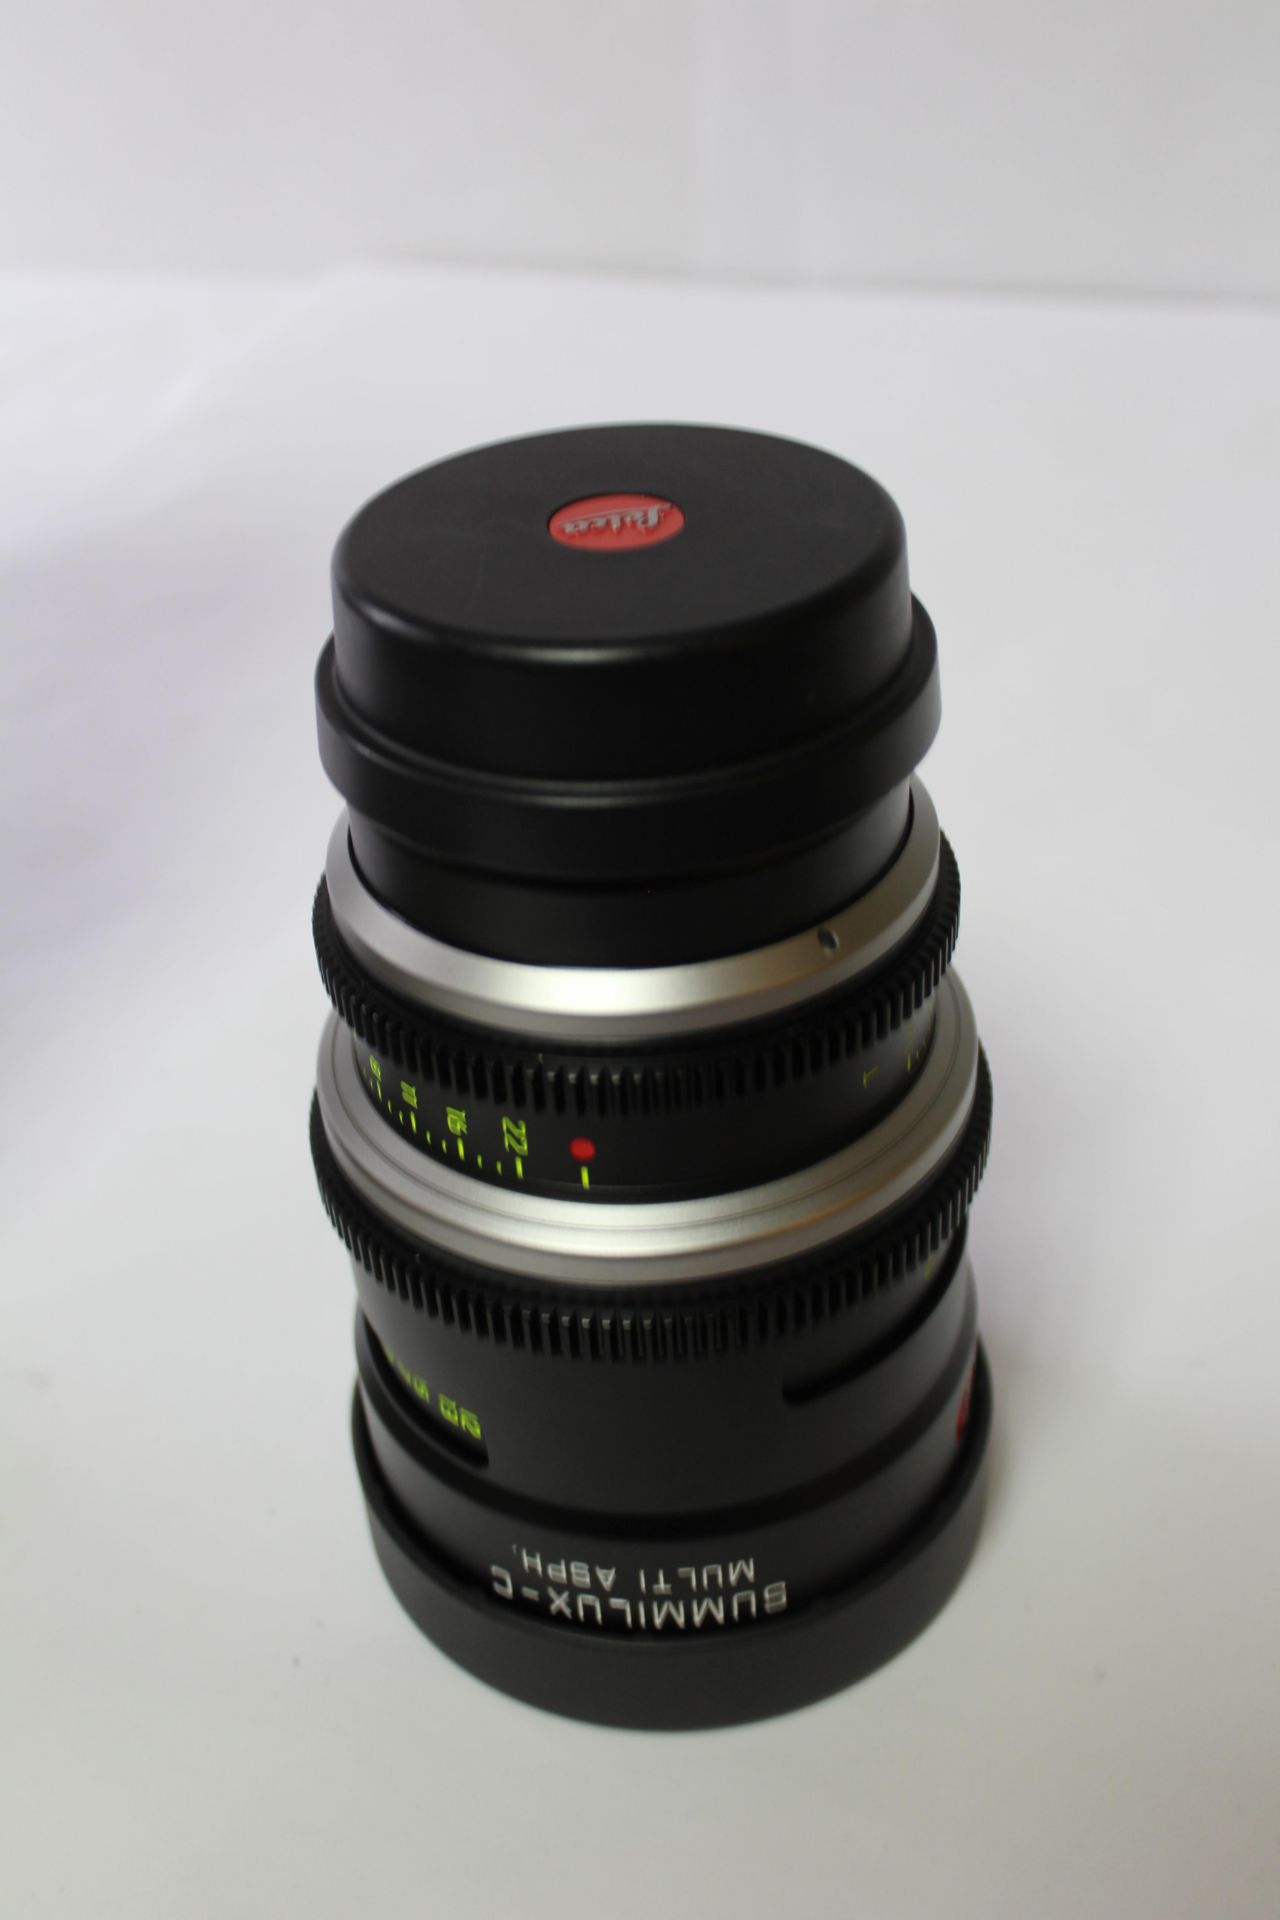 Leica Summilux-C Multi Asph 16mm Lens - Image 2 of 2